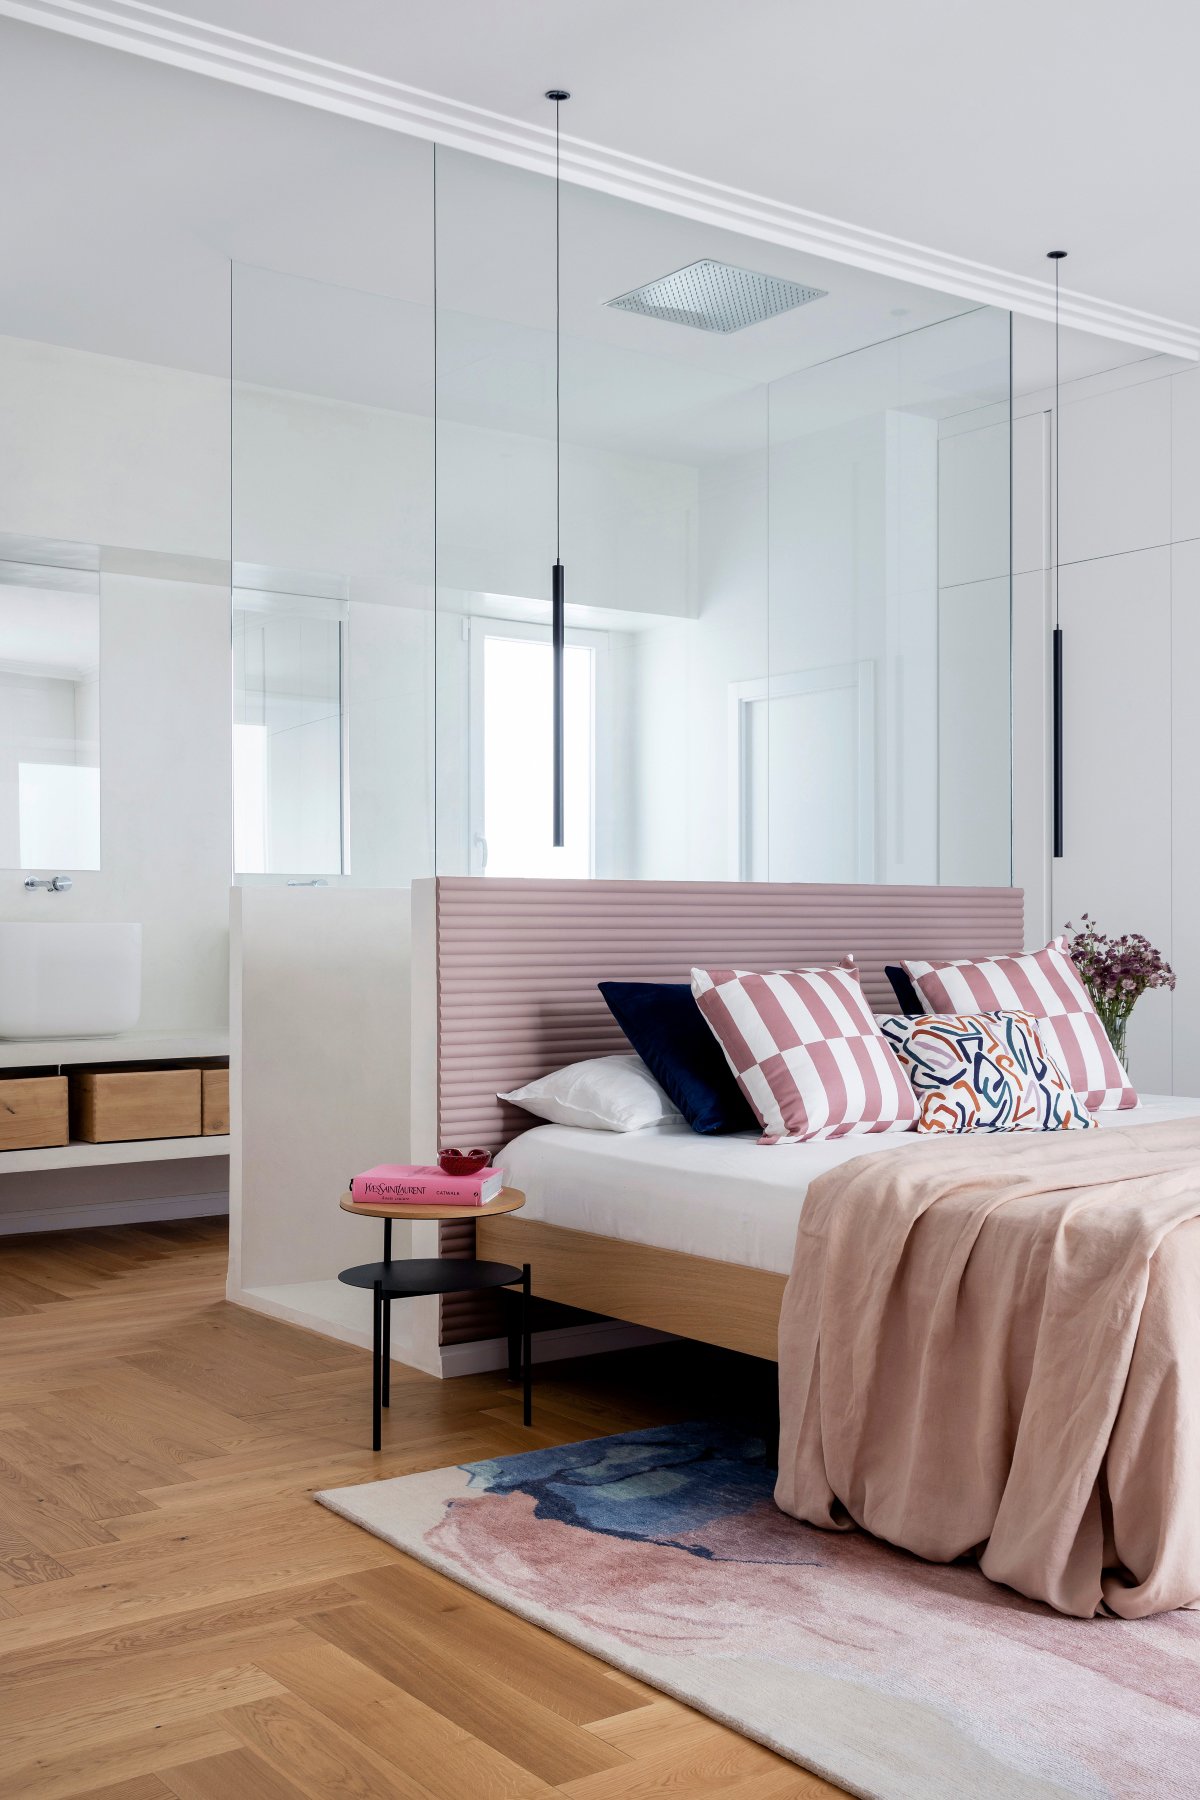 Dormitorio en tono rosa palo con madera y baño unido